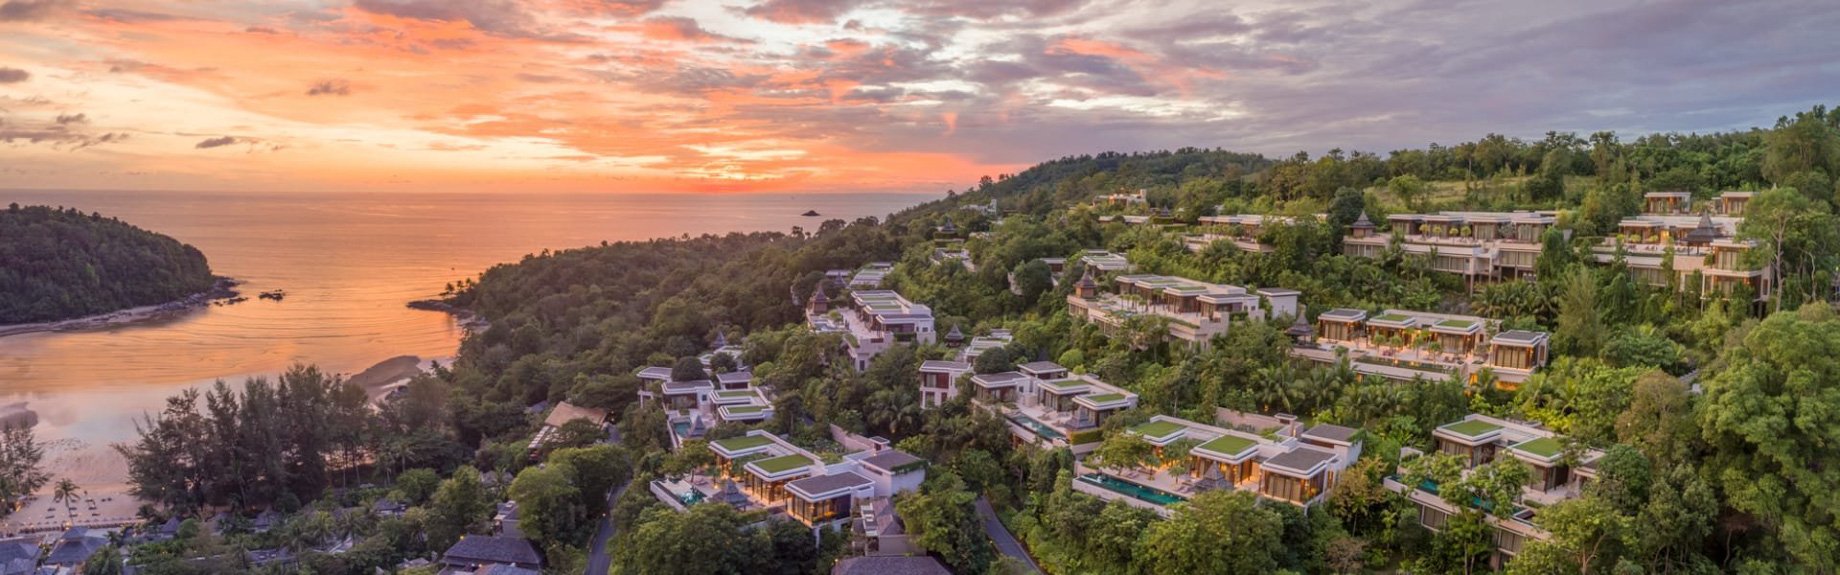 Anantara Layan Phuket Resort & Residences – Thailand – Upper Hill Residences Aerial View